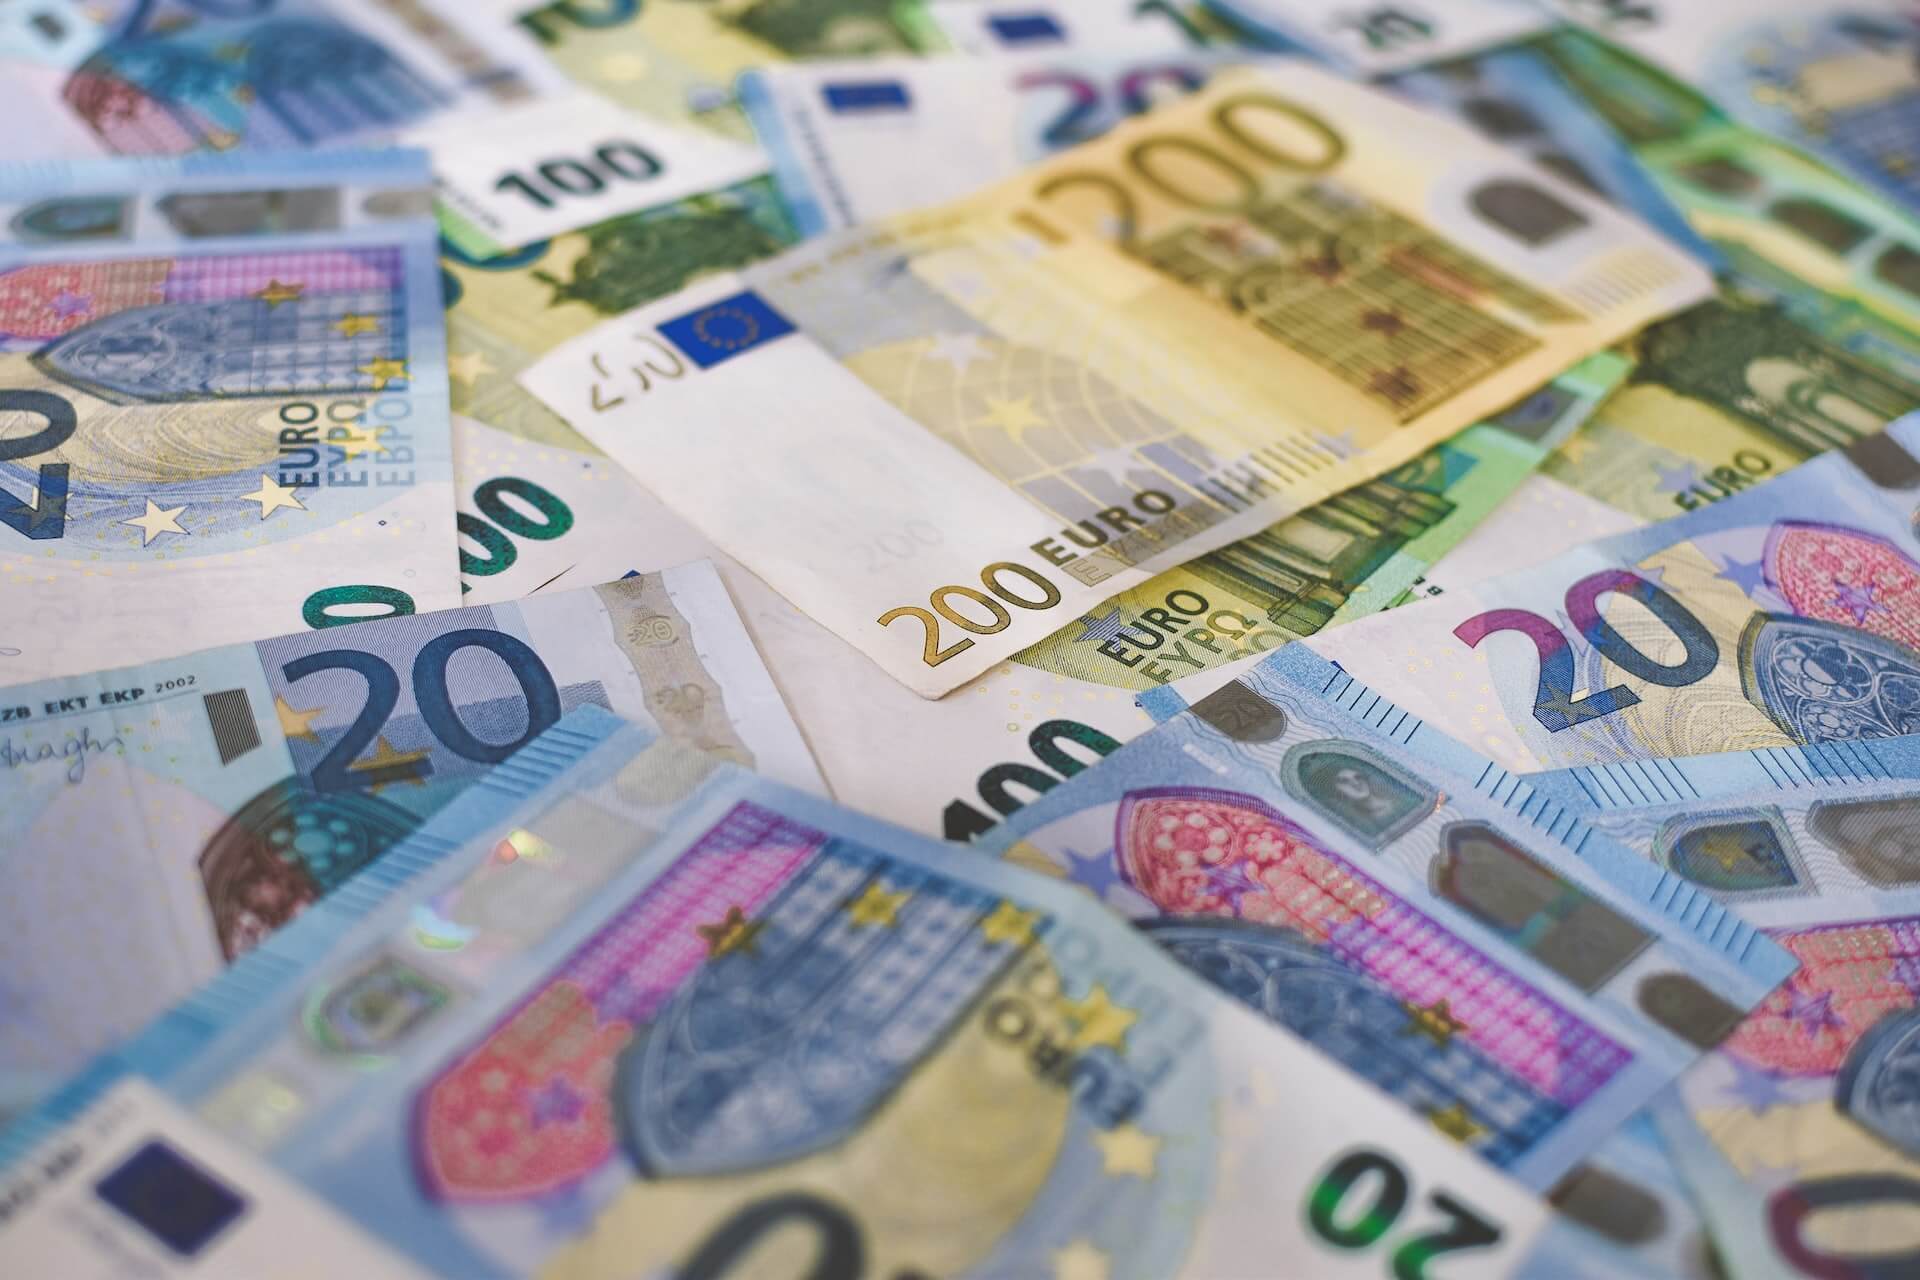 leasing w euro zdecydowanie tańszy - leasing bez tajemnic